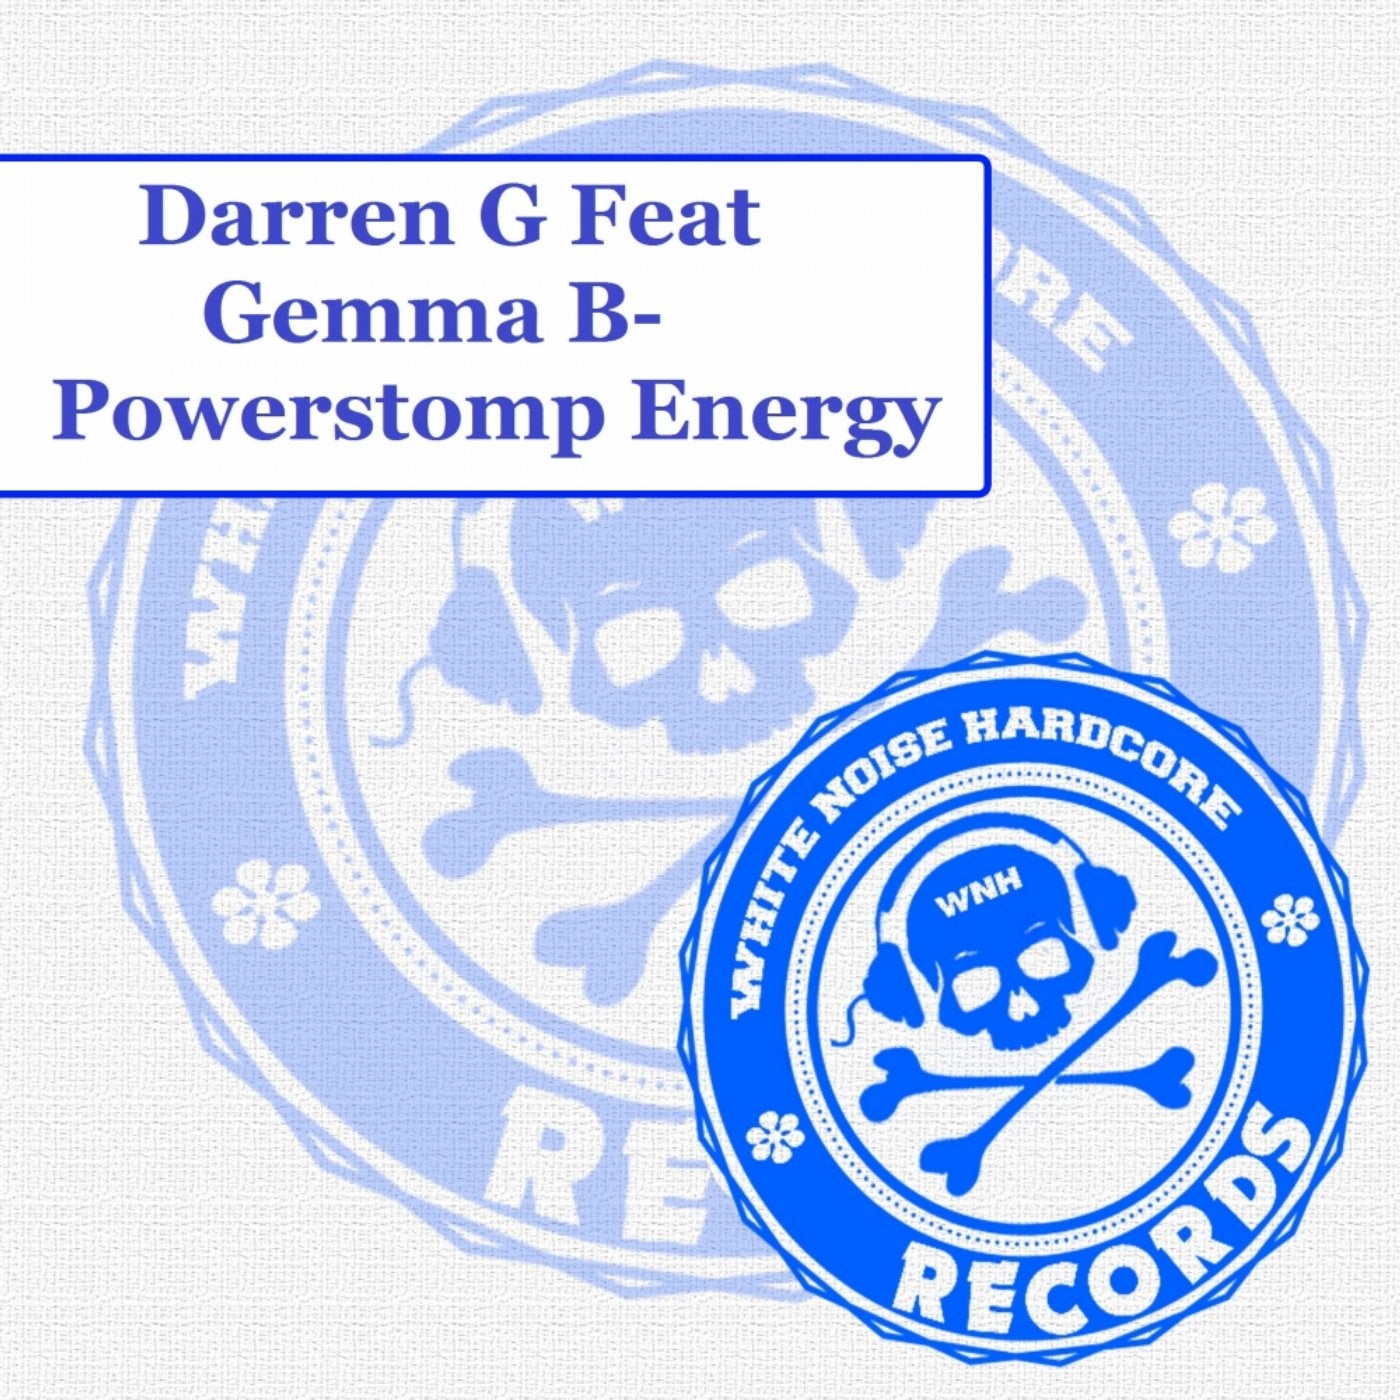 Powerstomp Energy